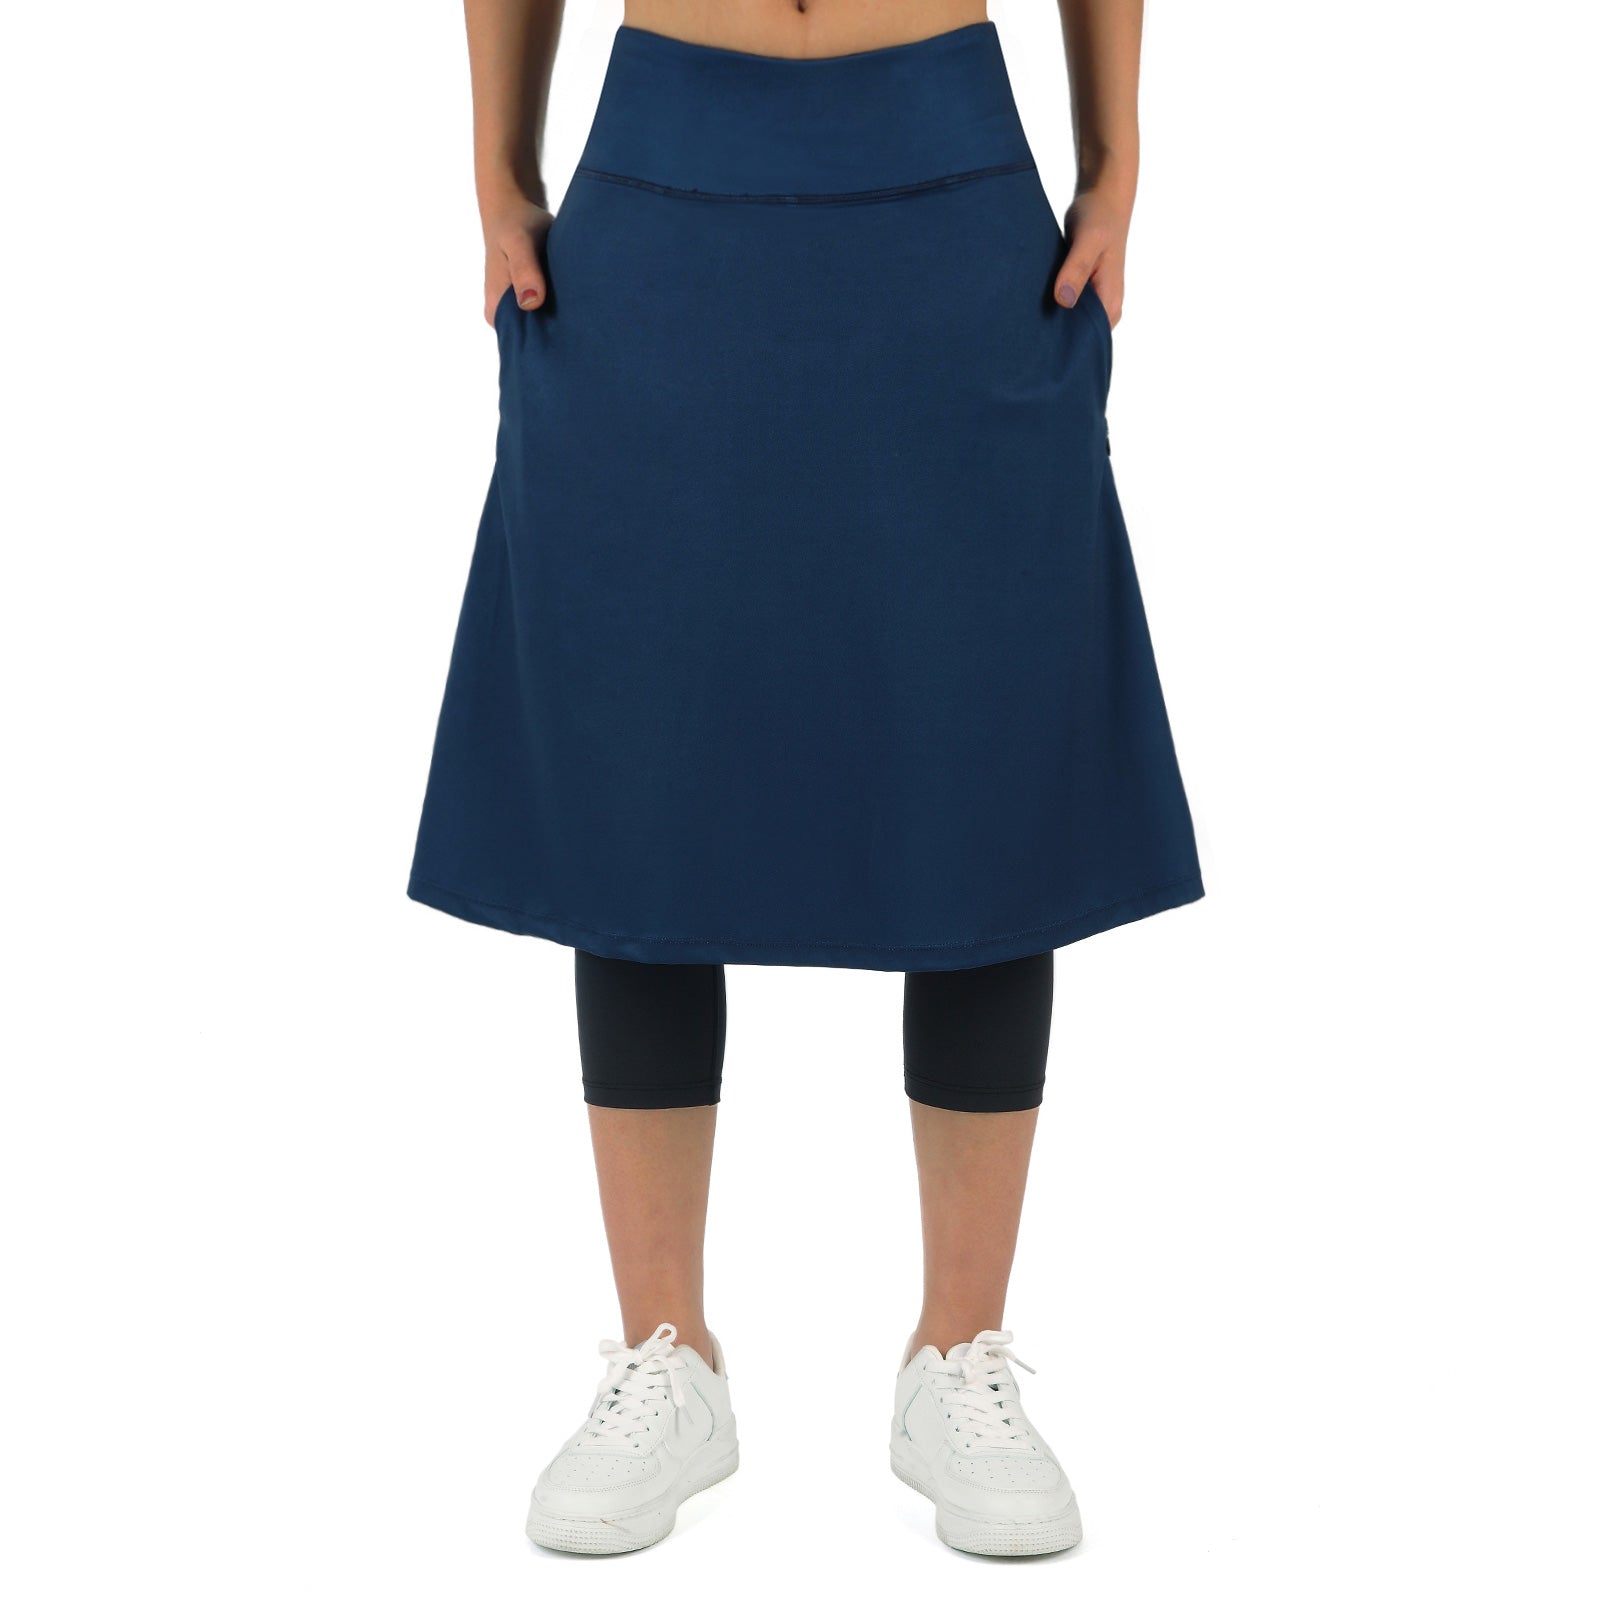 Anivivo Women Long Knee Length Skirt with Capris Leggings, Skirted Lee